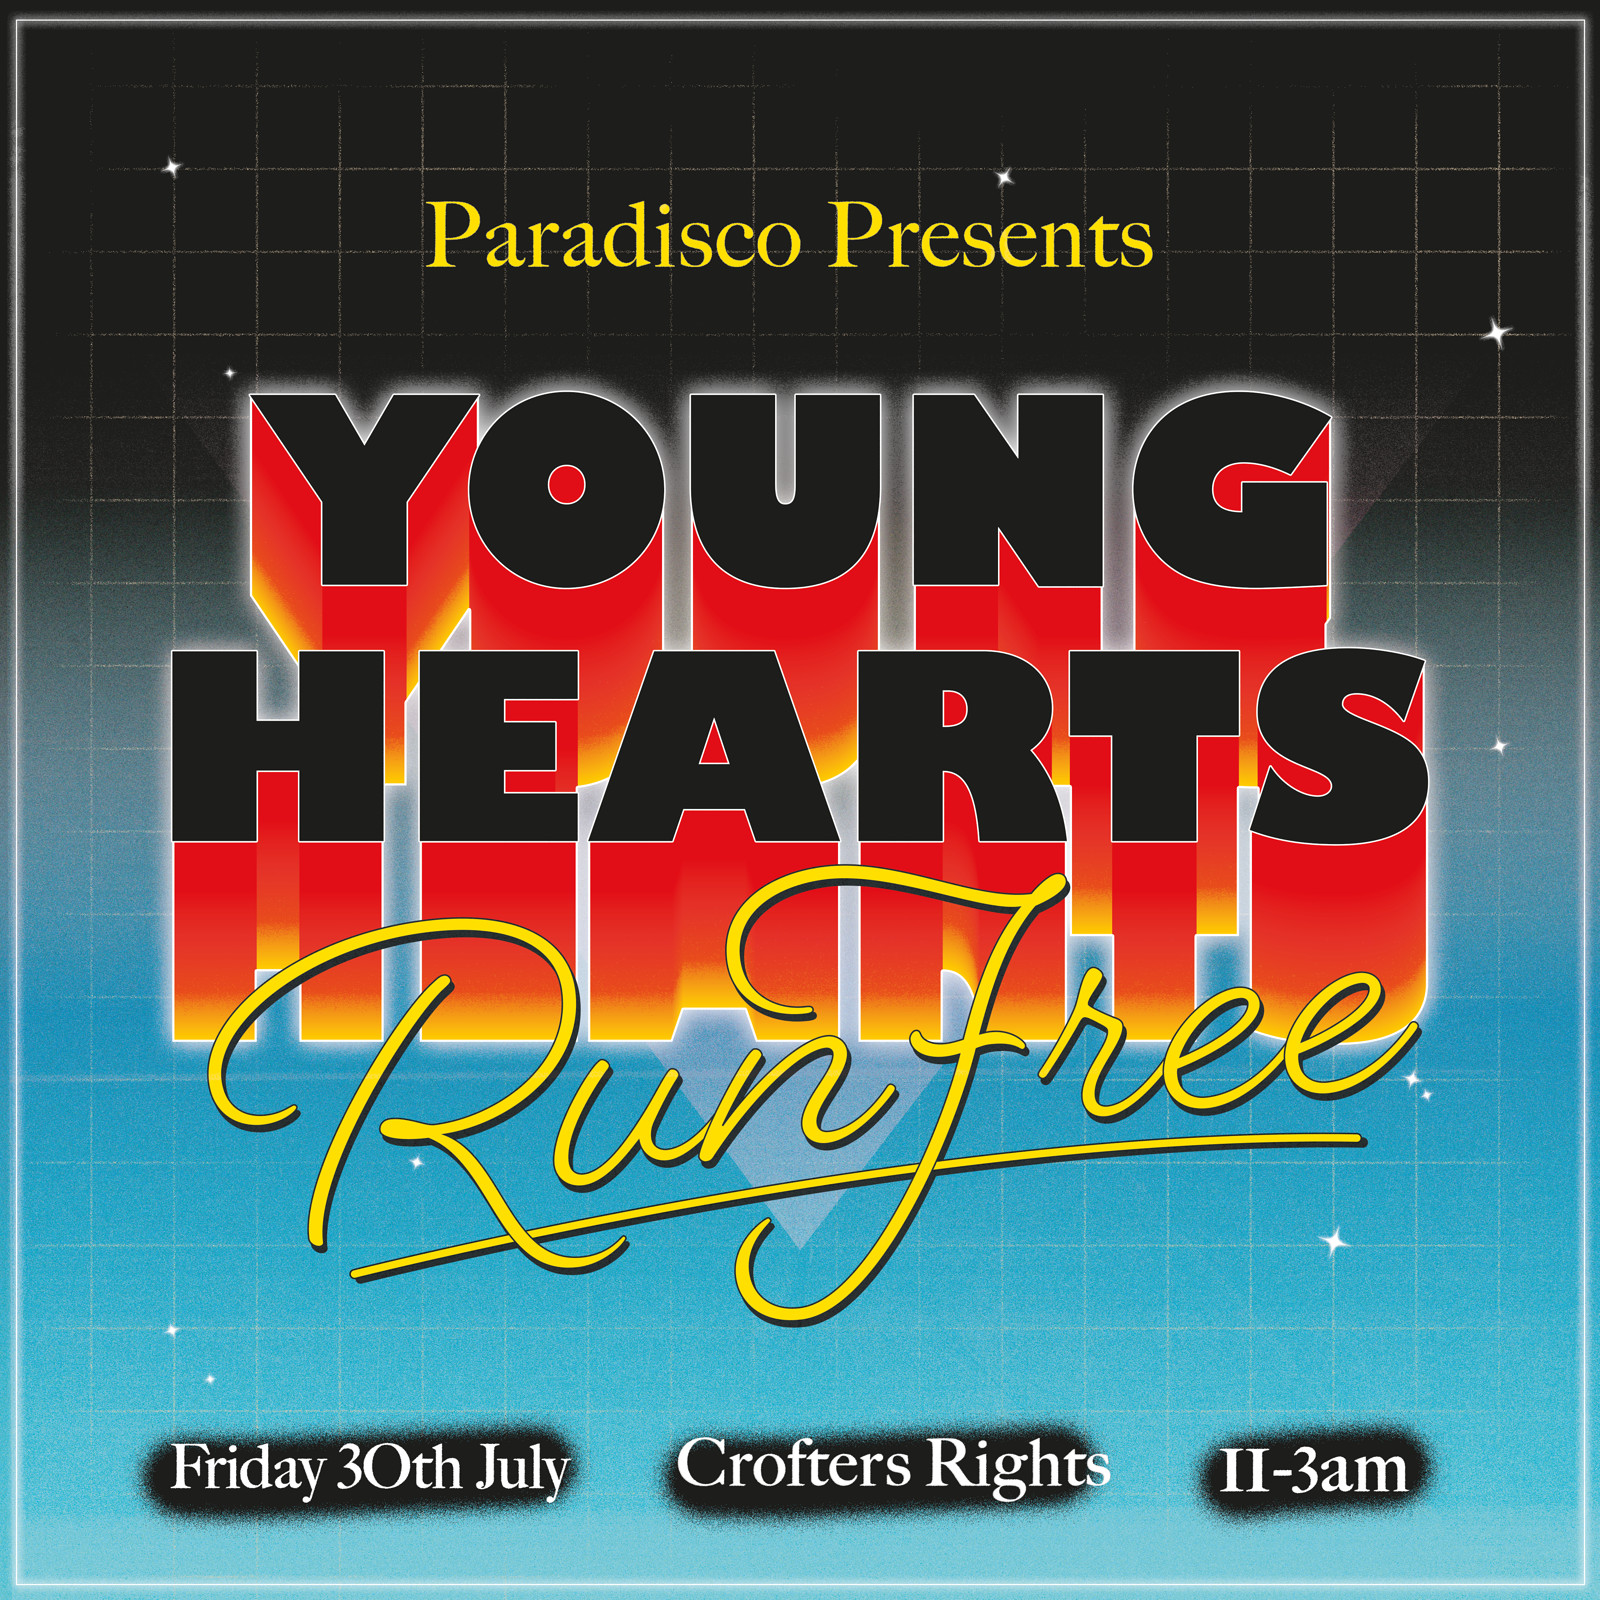 YOUNG HEARTS, RUN FREE // PARADISCO at Crofters Rights